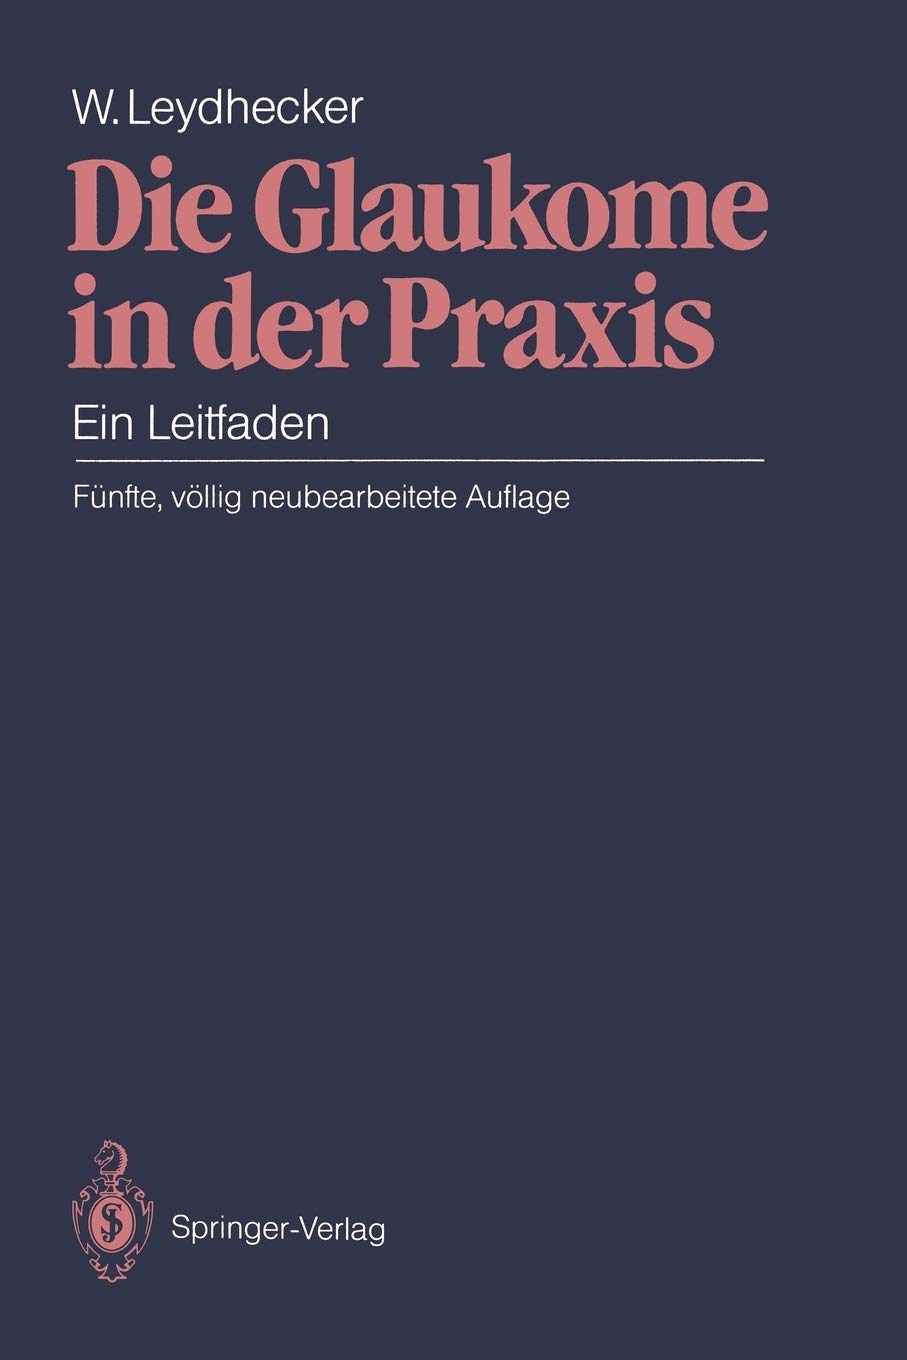 Die Glaukome in der Praxis: Ein Leitfaden (German Edition)